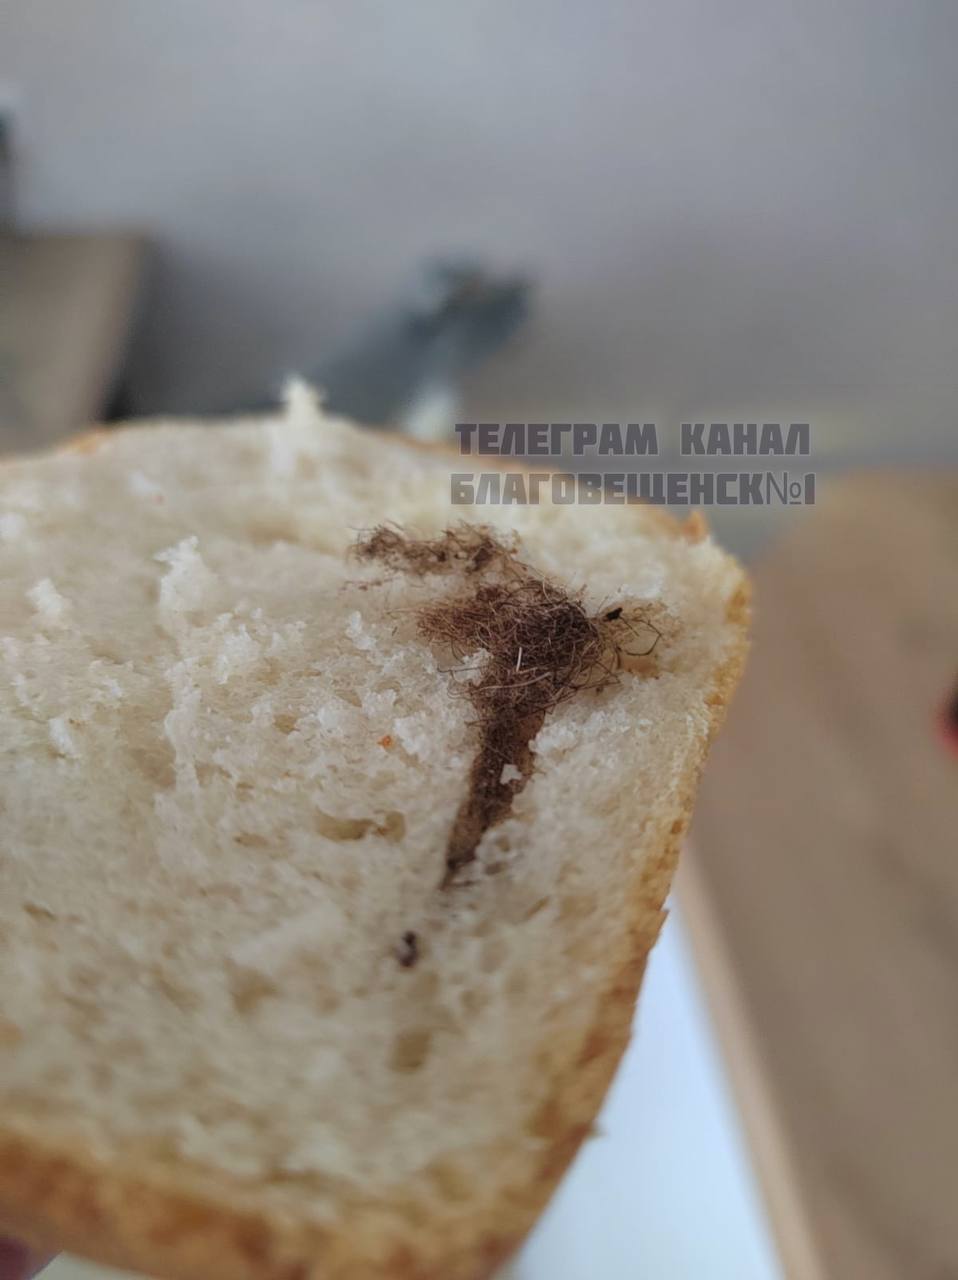 Хлеб с неожиданной "начинкой" купили в Амурской области